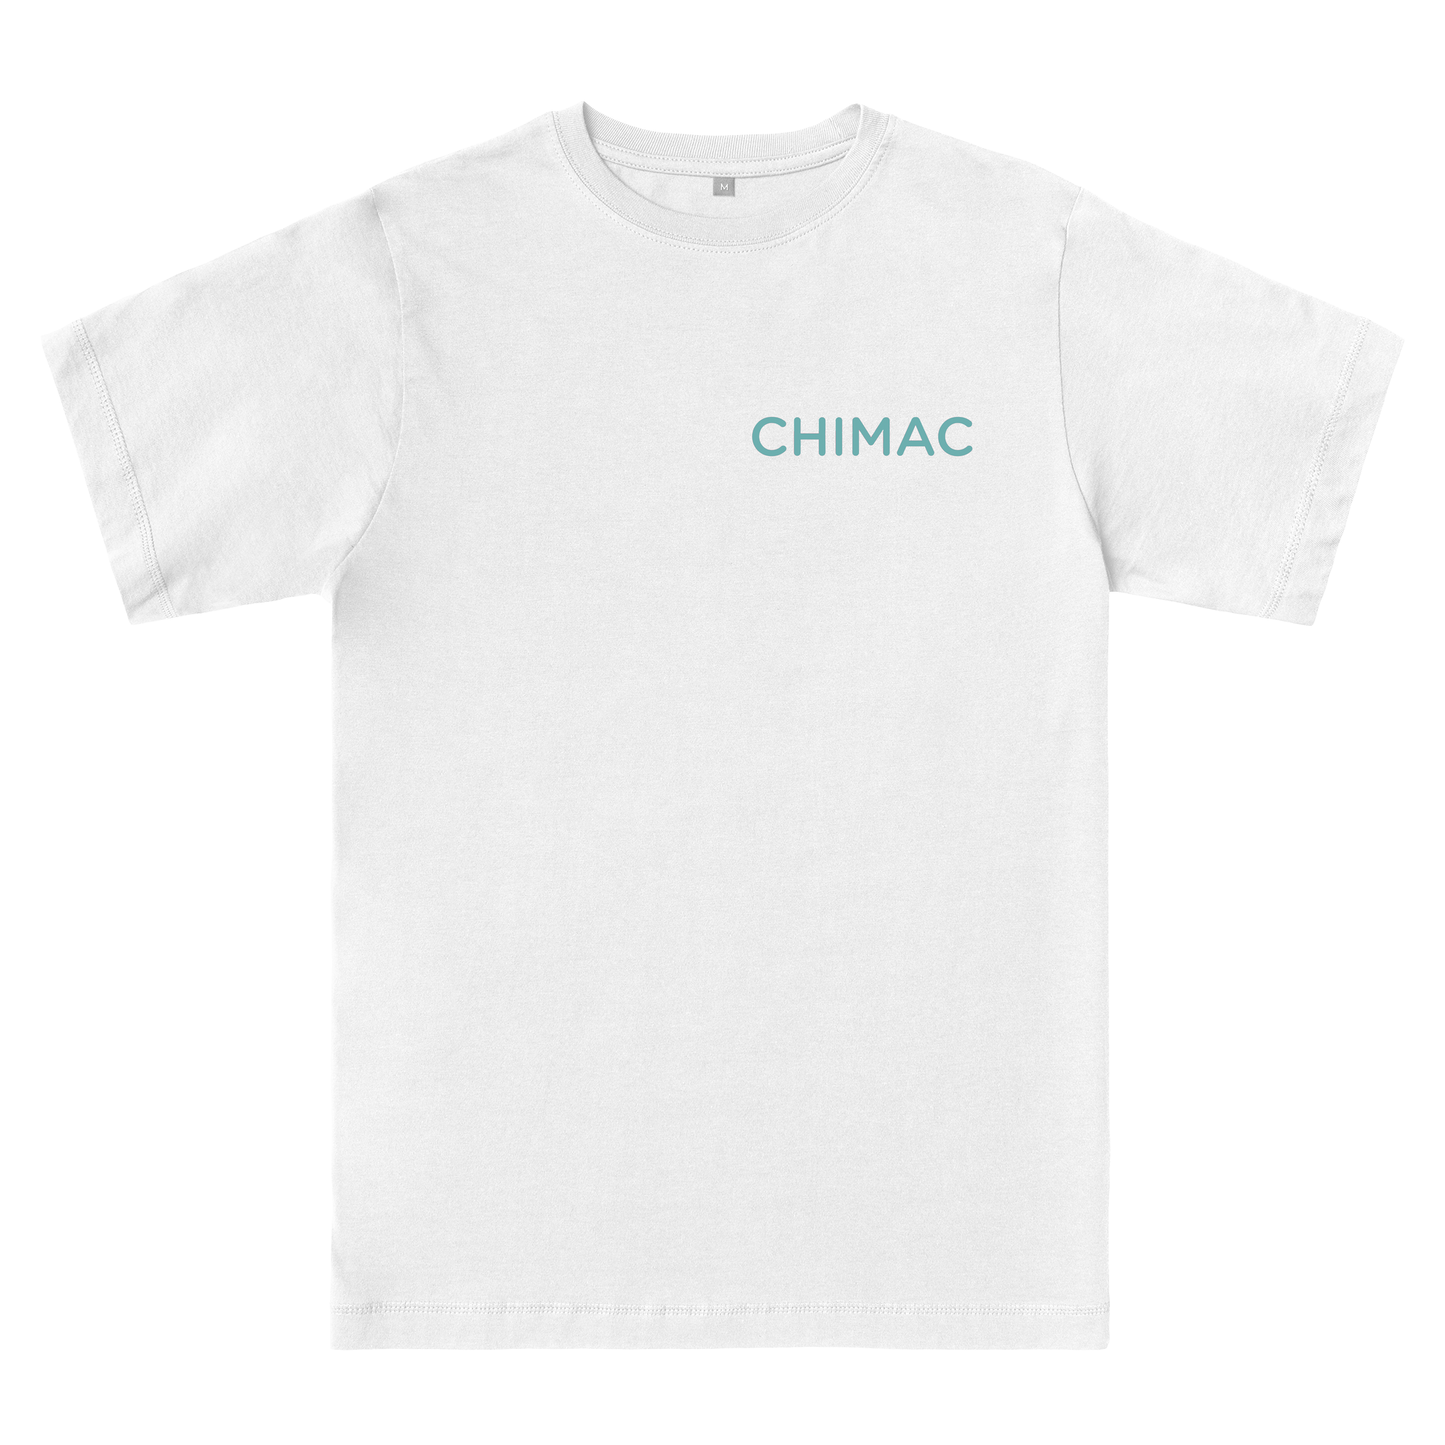 Kaleido Chimac - Classic T-Shirt